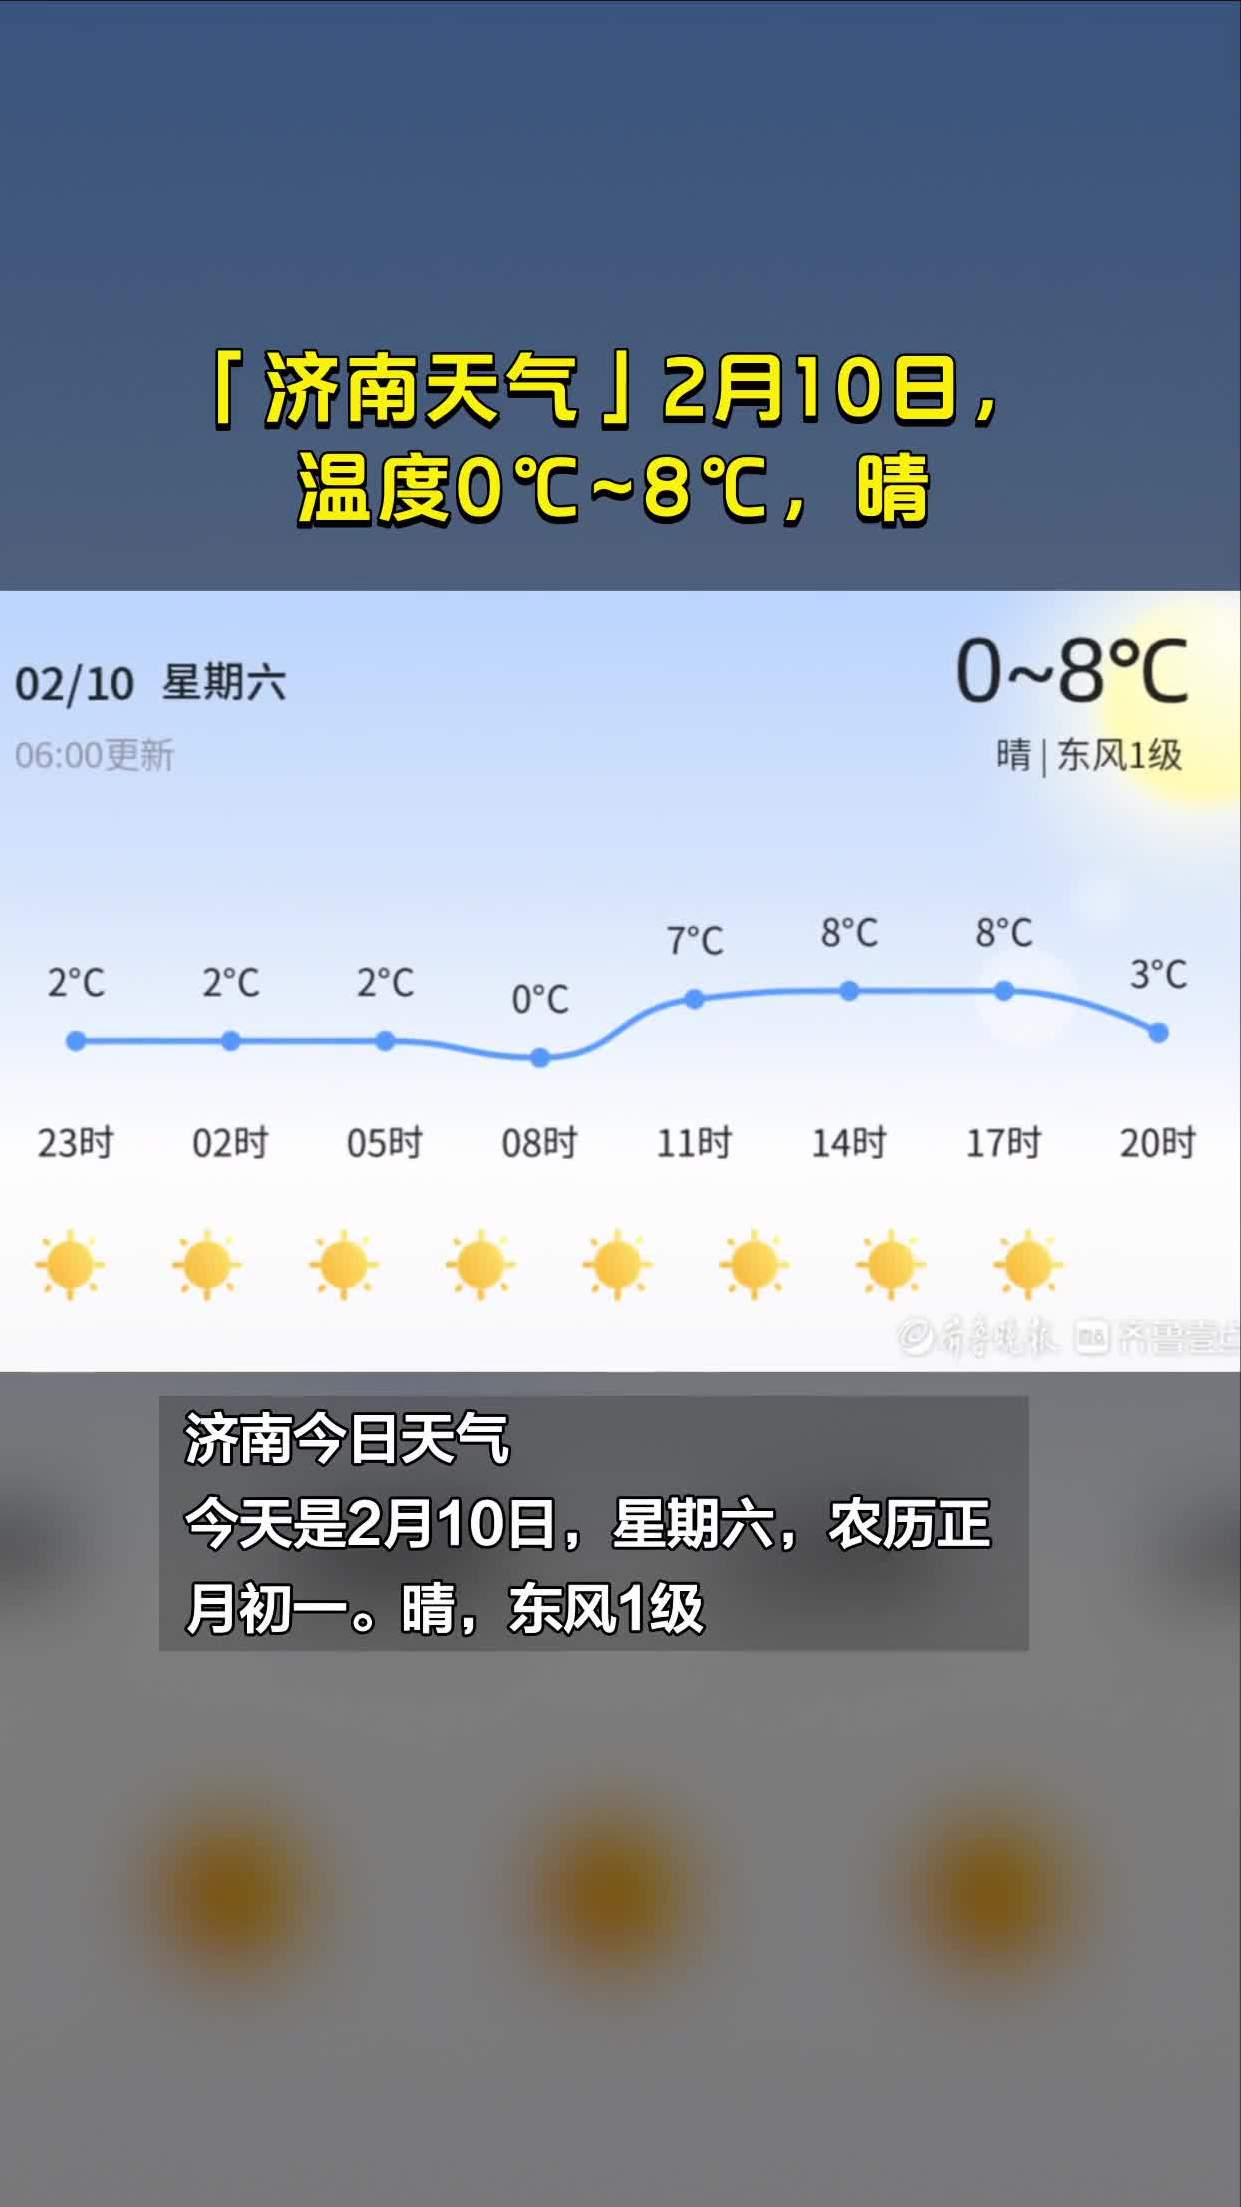 济南天气2月10日温度08晴